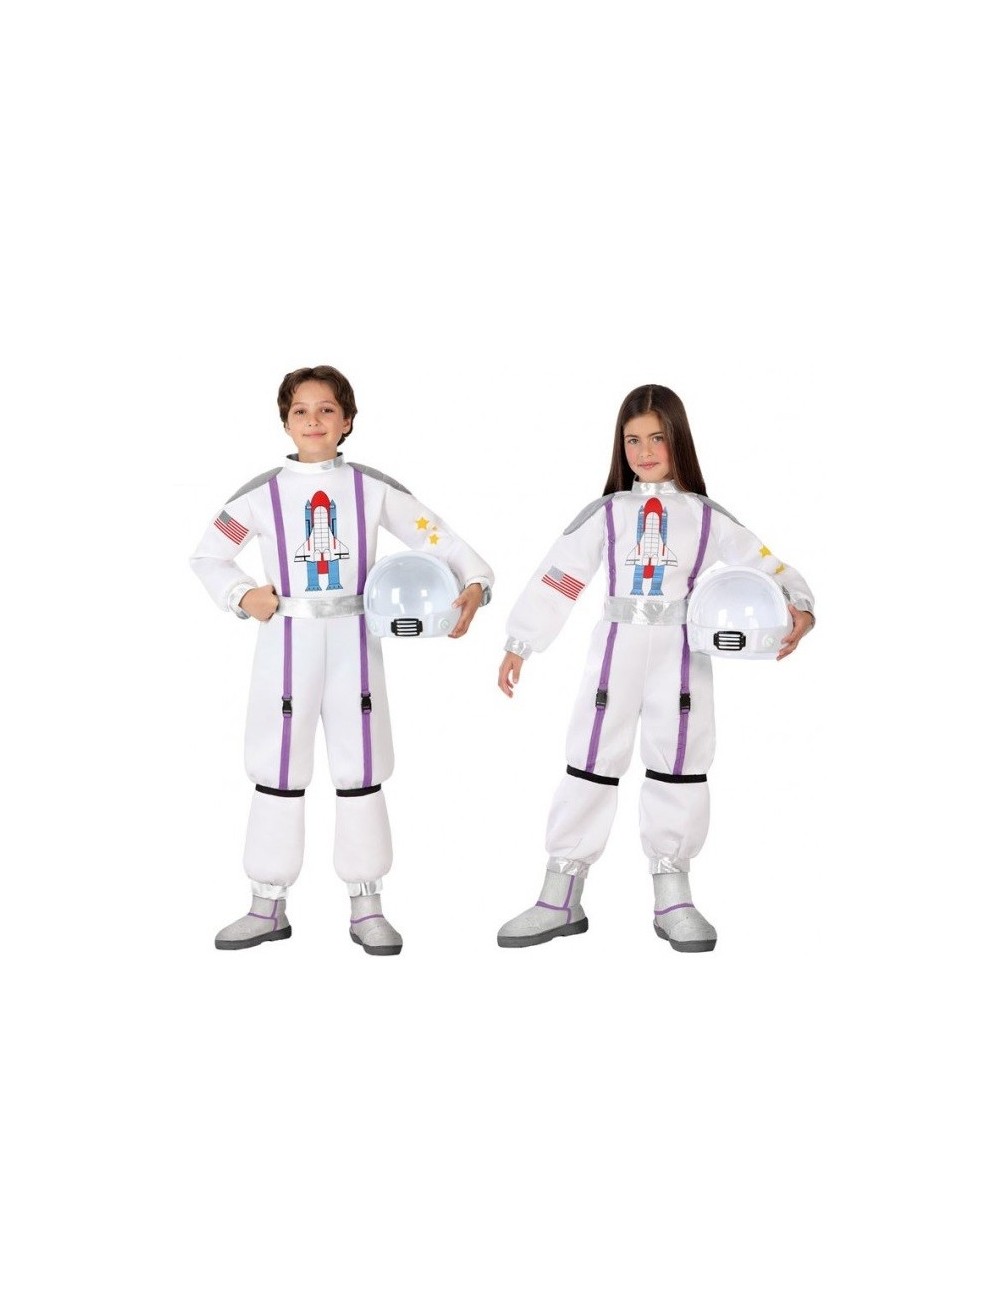 Costum Astronaut, unisex, copii 3-12 ani